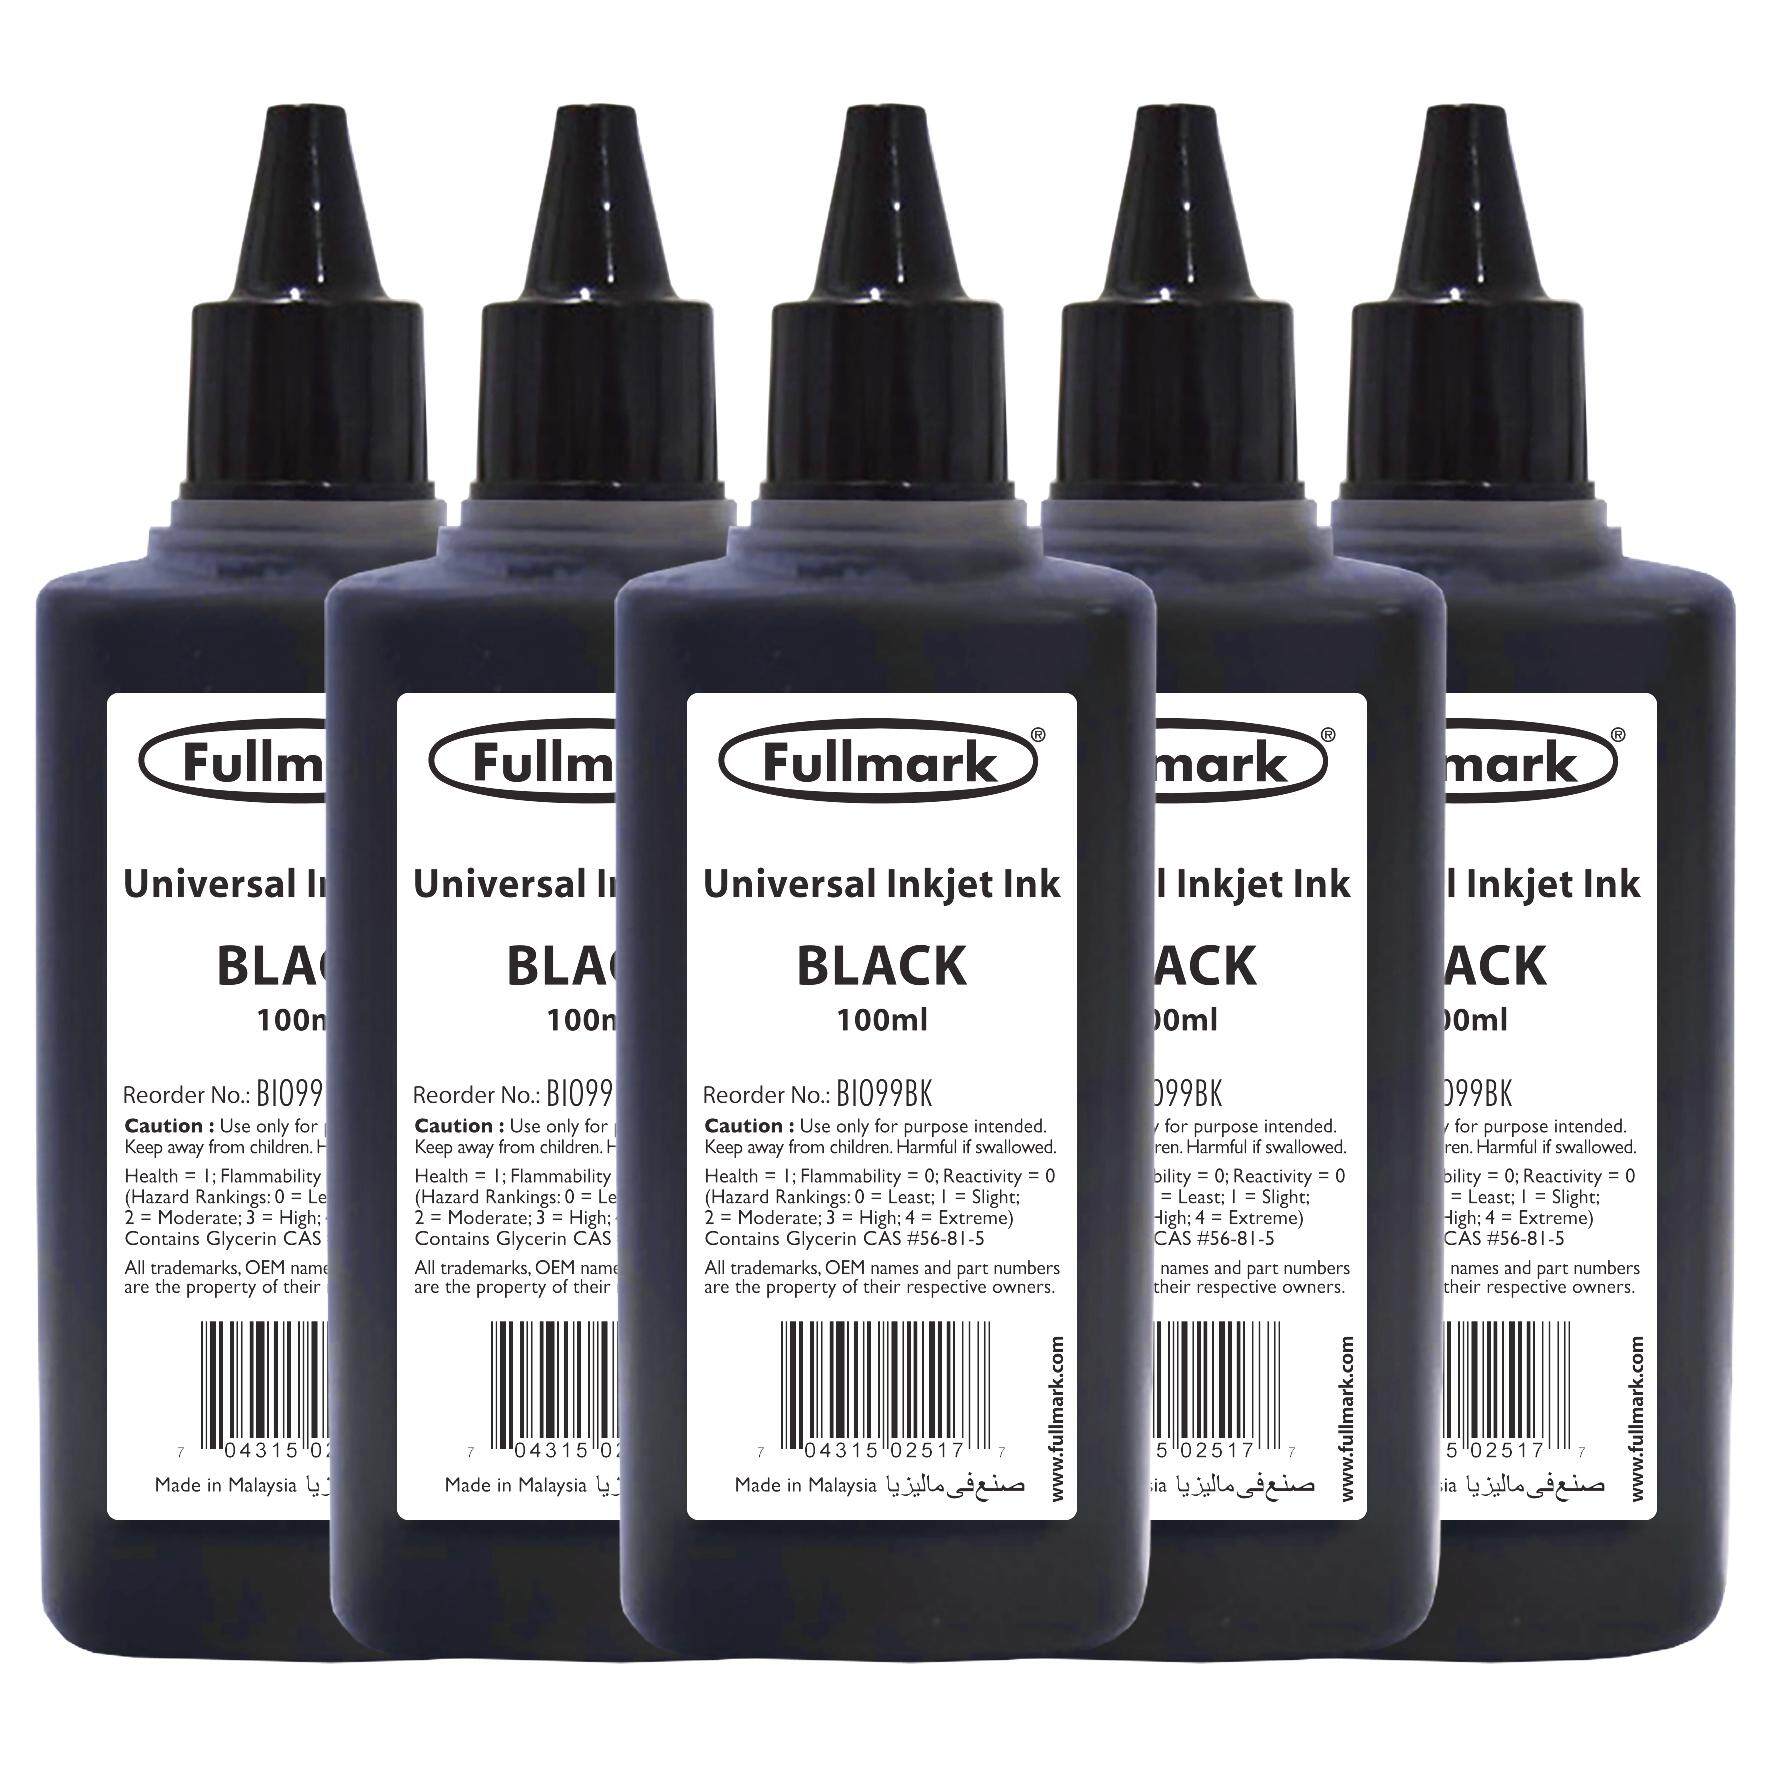 Fullmark Ink Refill Universal Inkjet for Canon / HP / Epson / Brother / Lexmark Printer , 5 x 100ml - Black (BI099)